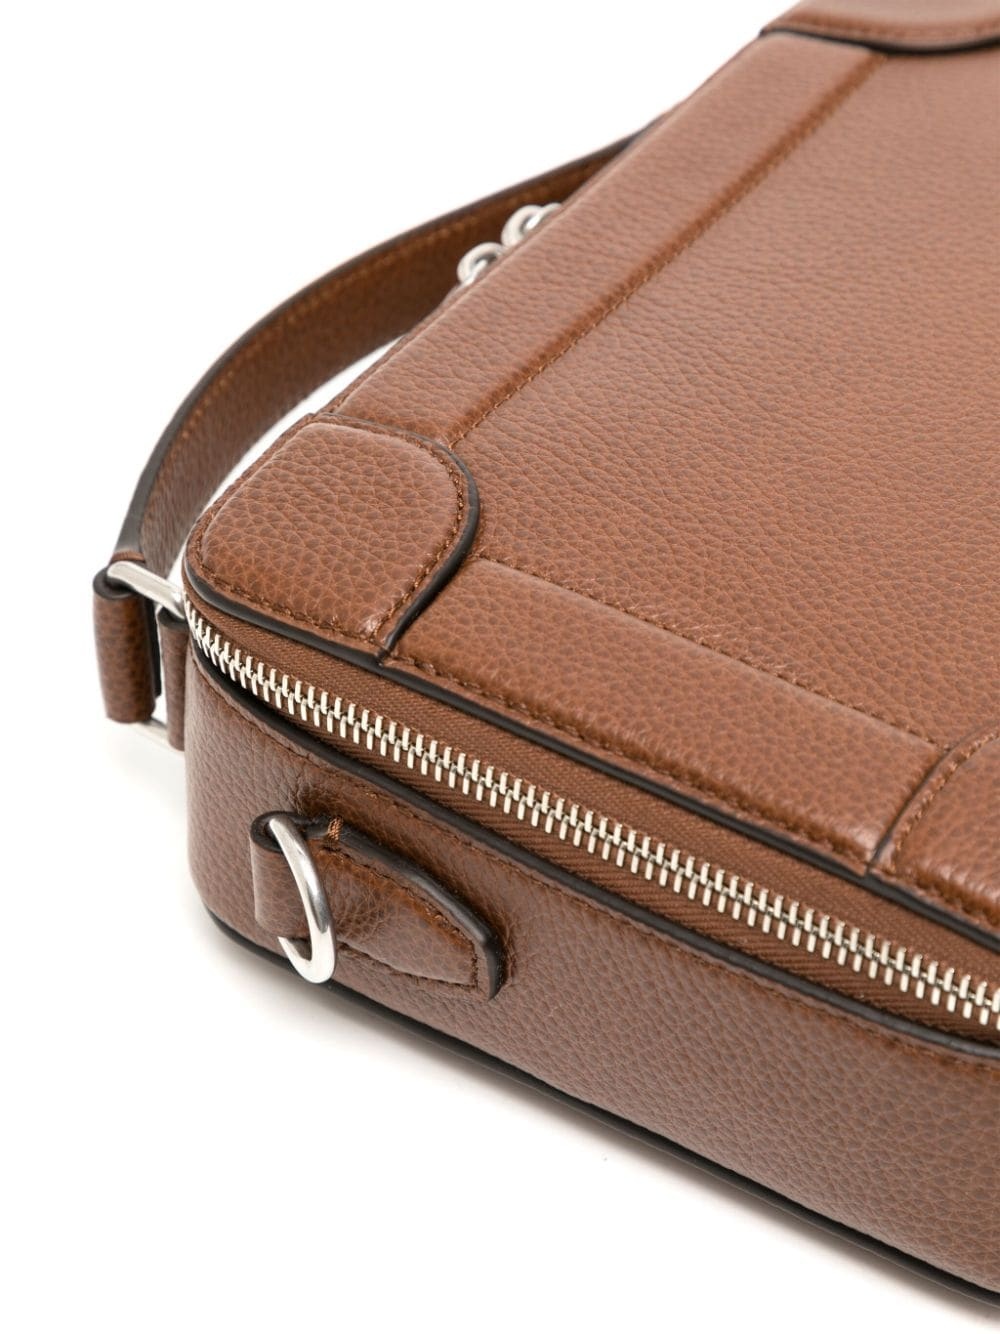 Belgrave leather messenger bag - 4